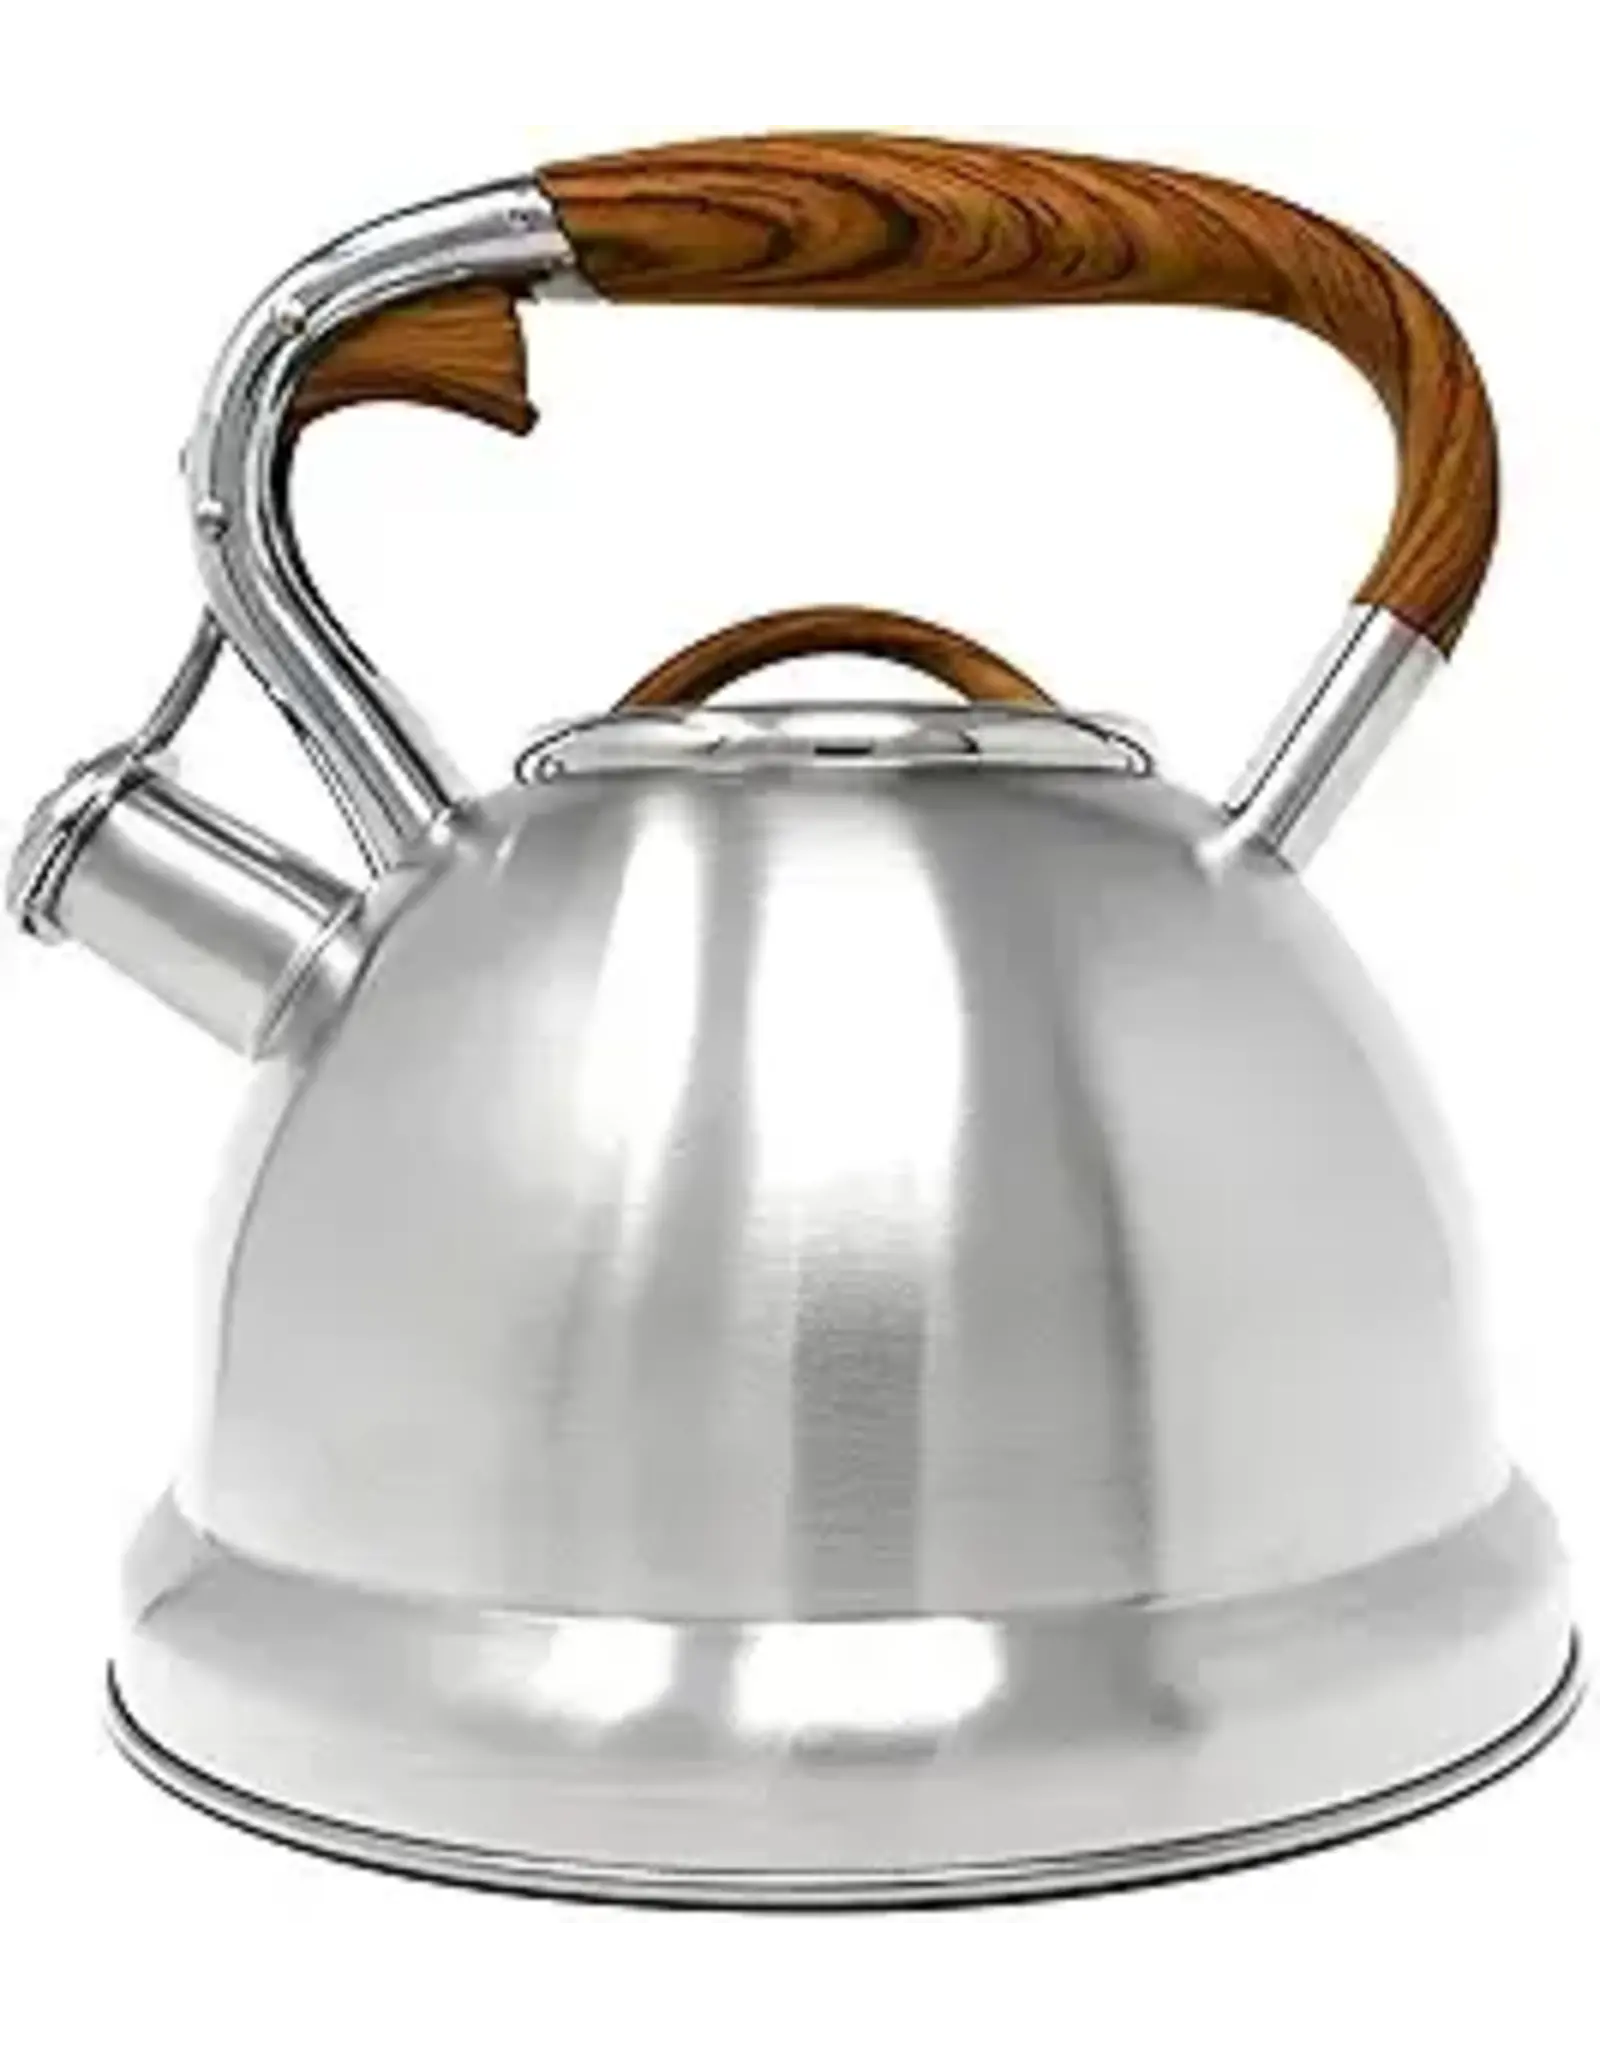 https://cdn.shoplightspeed.com/shops/635781/files/58081710/1600x2048x2/whistling-tea-kettle-stainless-steel-31l.jpg